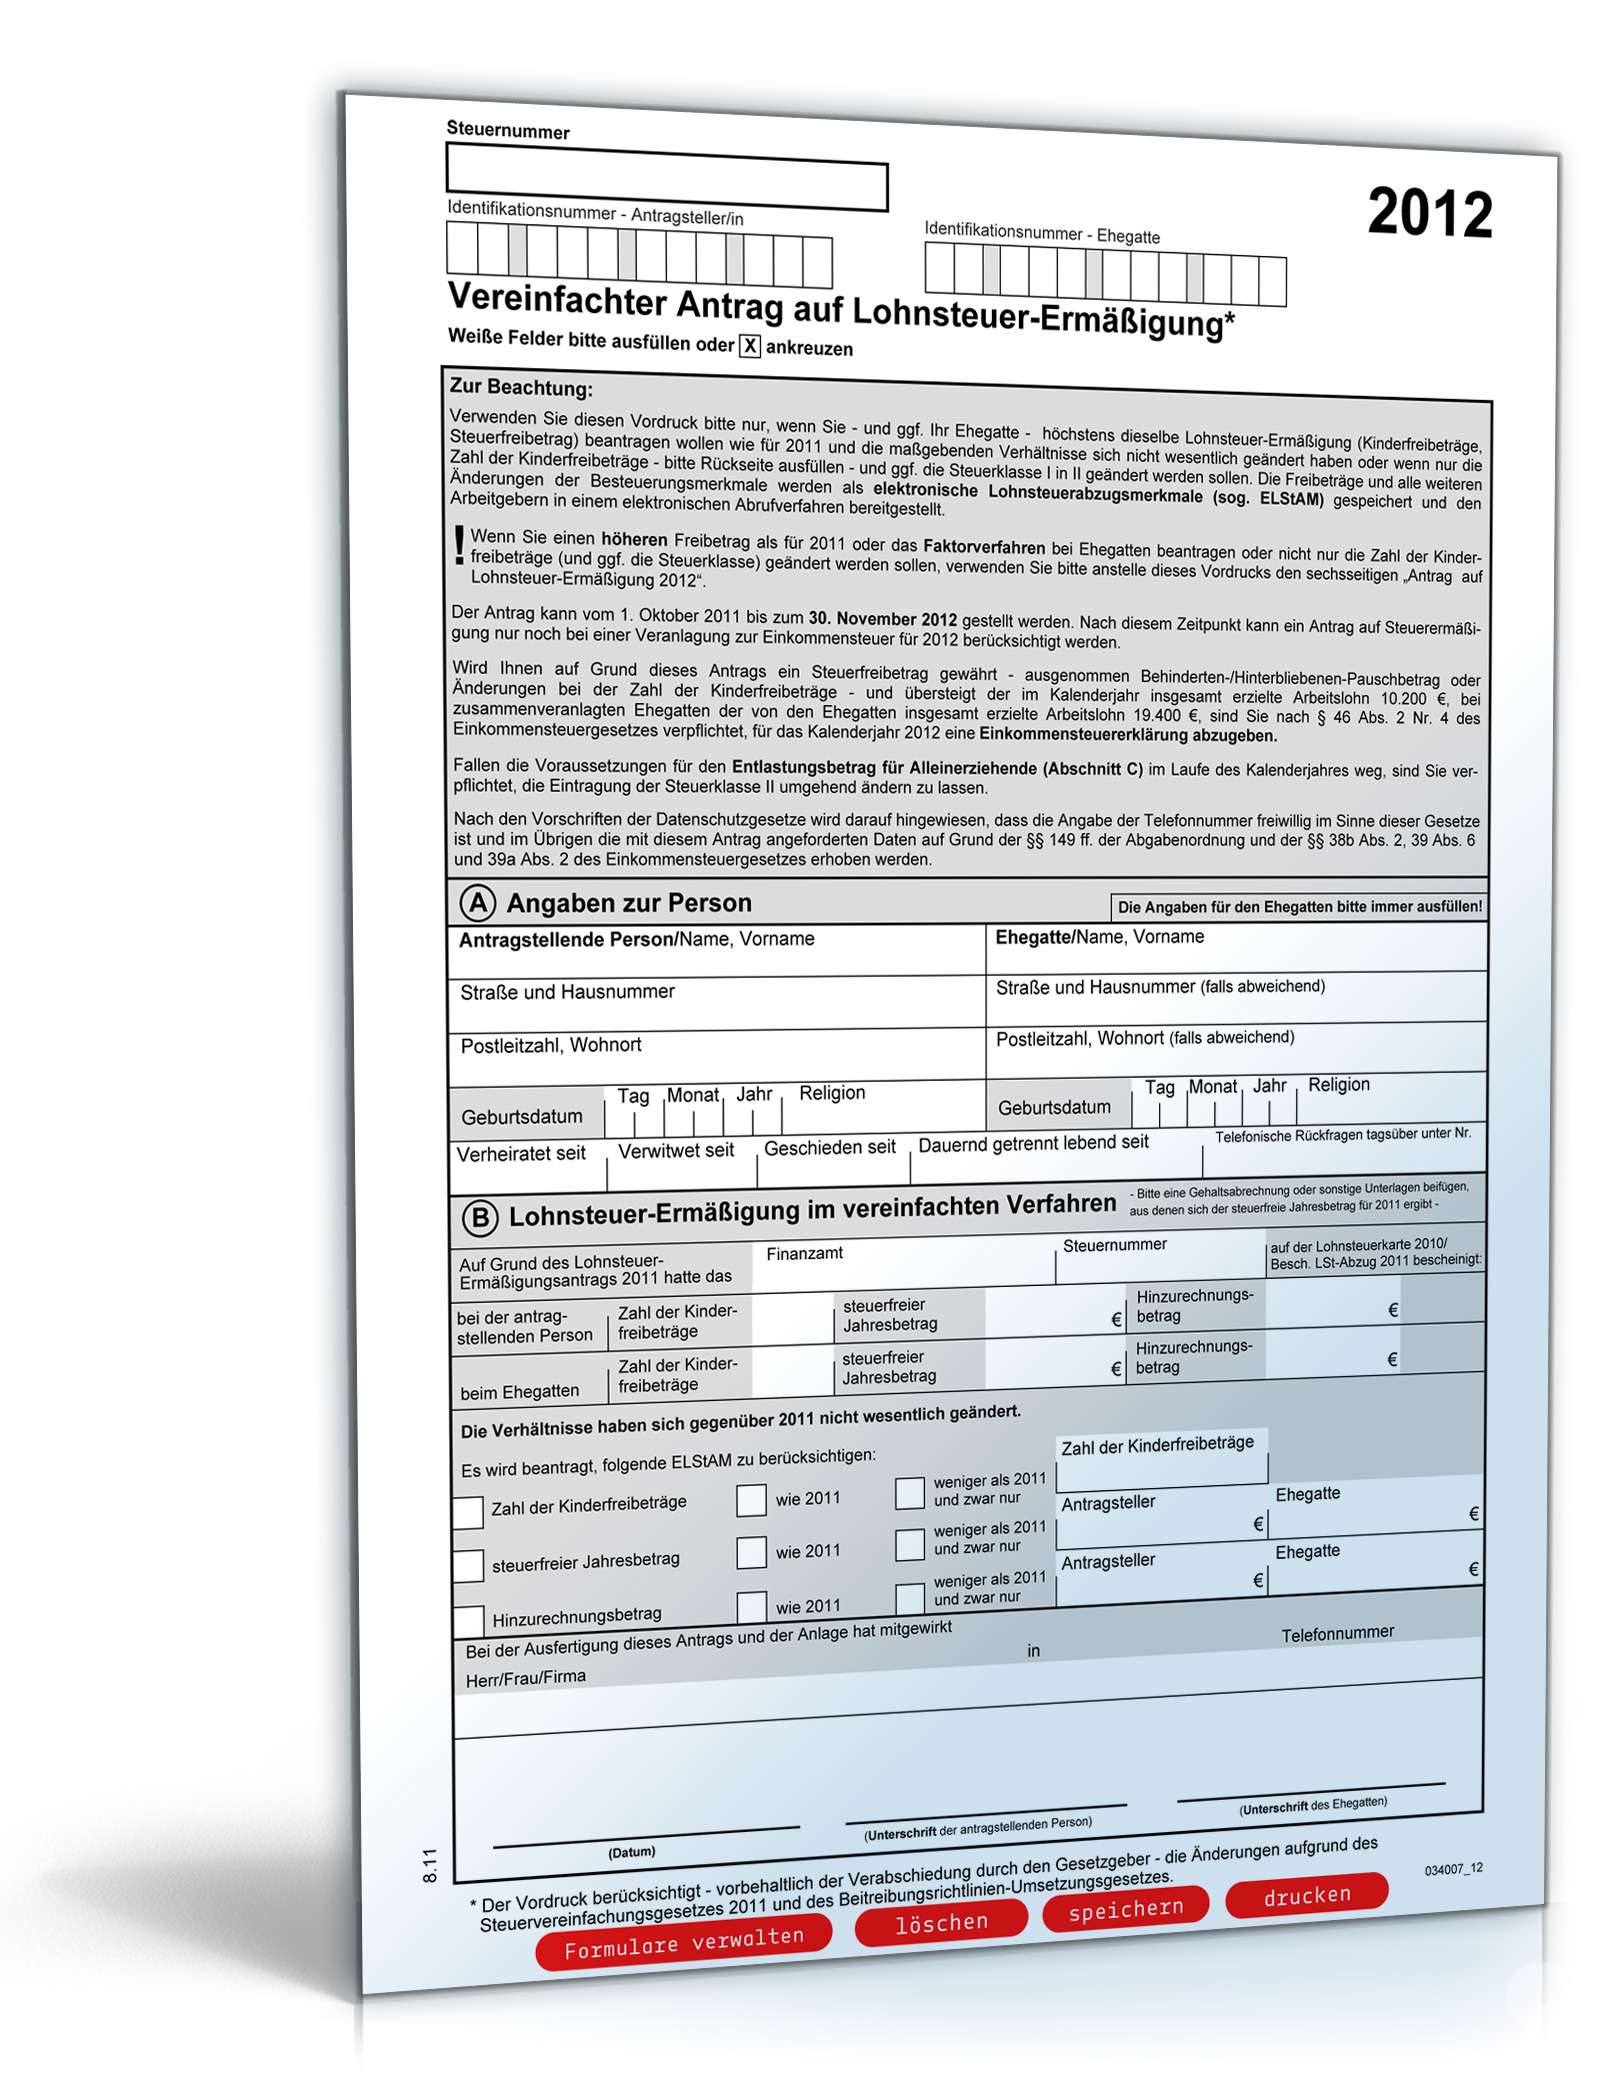 Hauptbild des Produkts: Vereinfachter Antrag auf Lohnsteuer­ermäßigung 2012